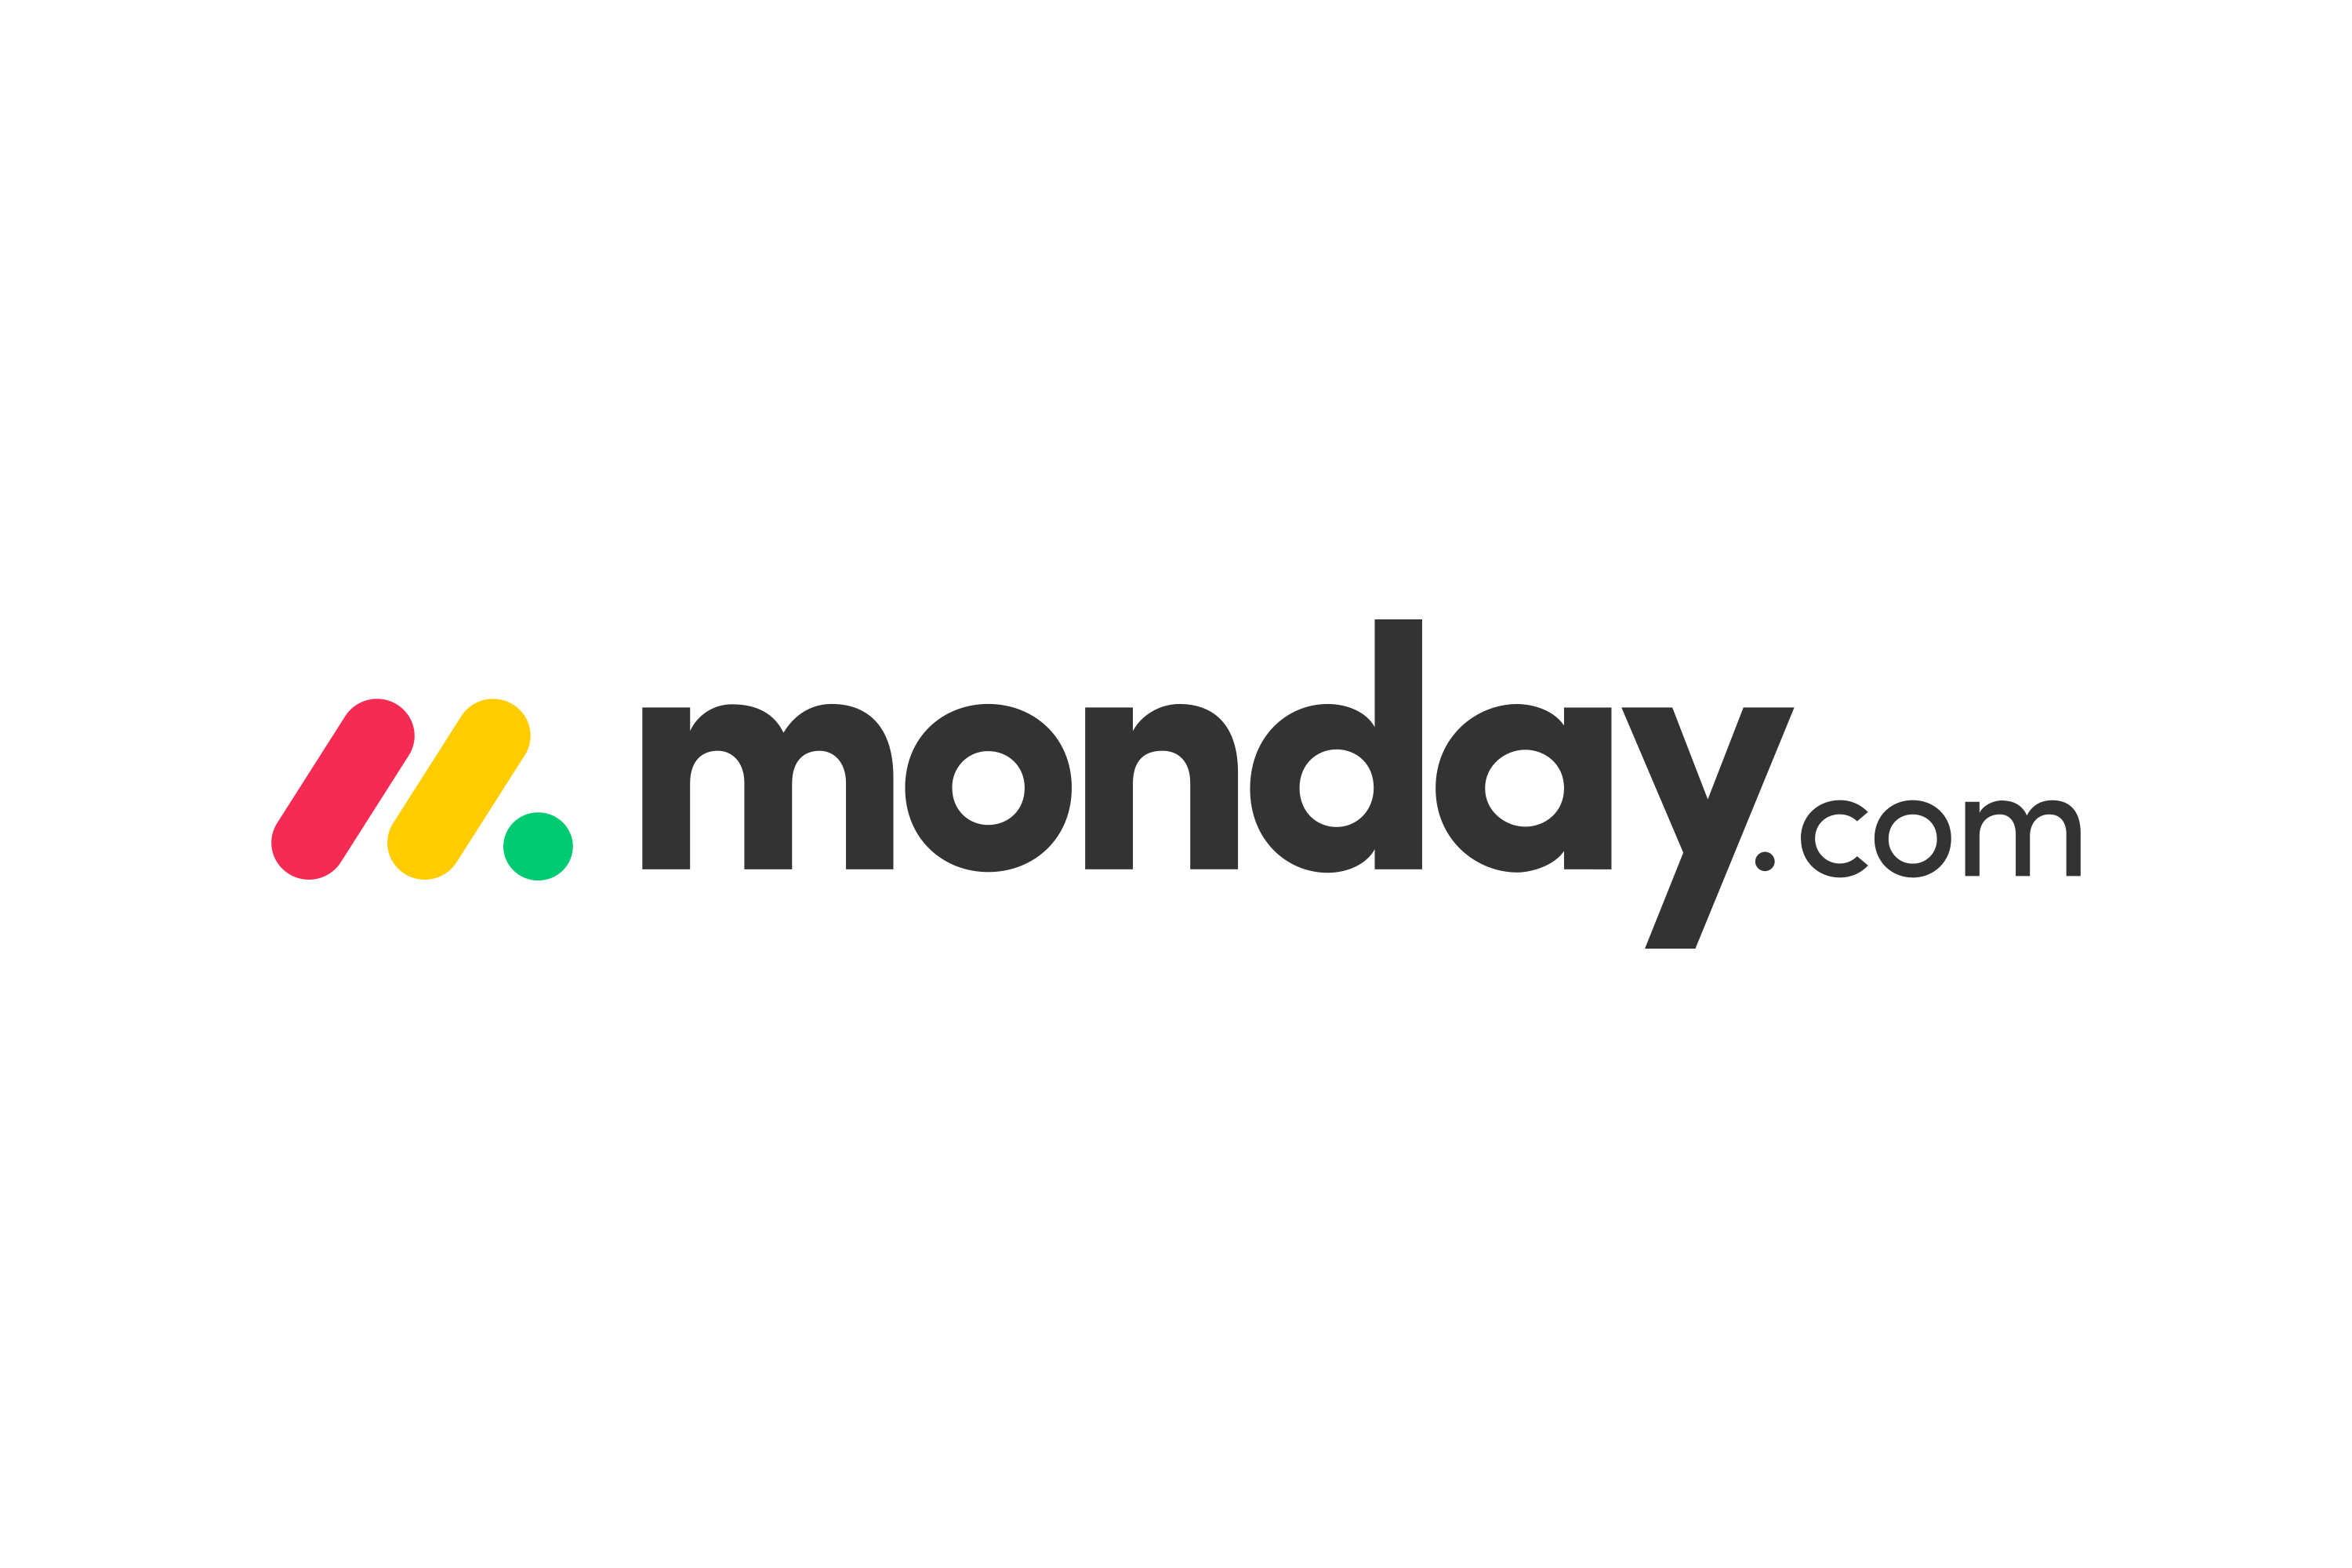 Monday.com project management